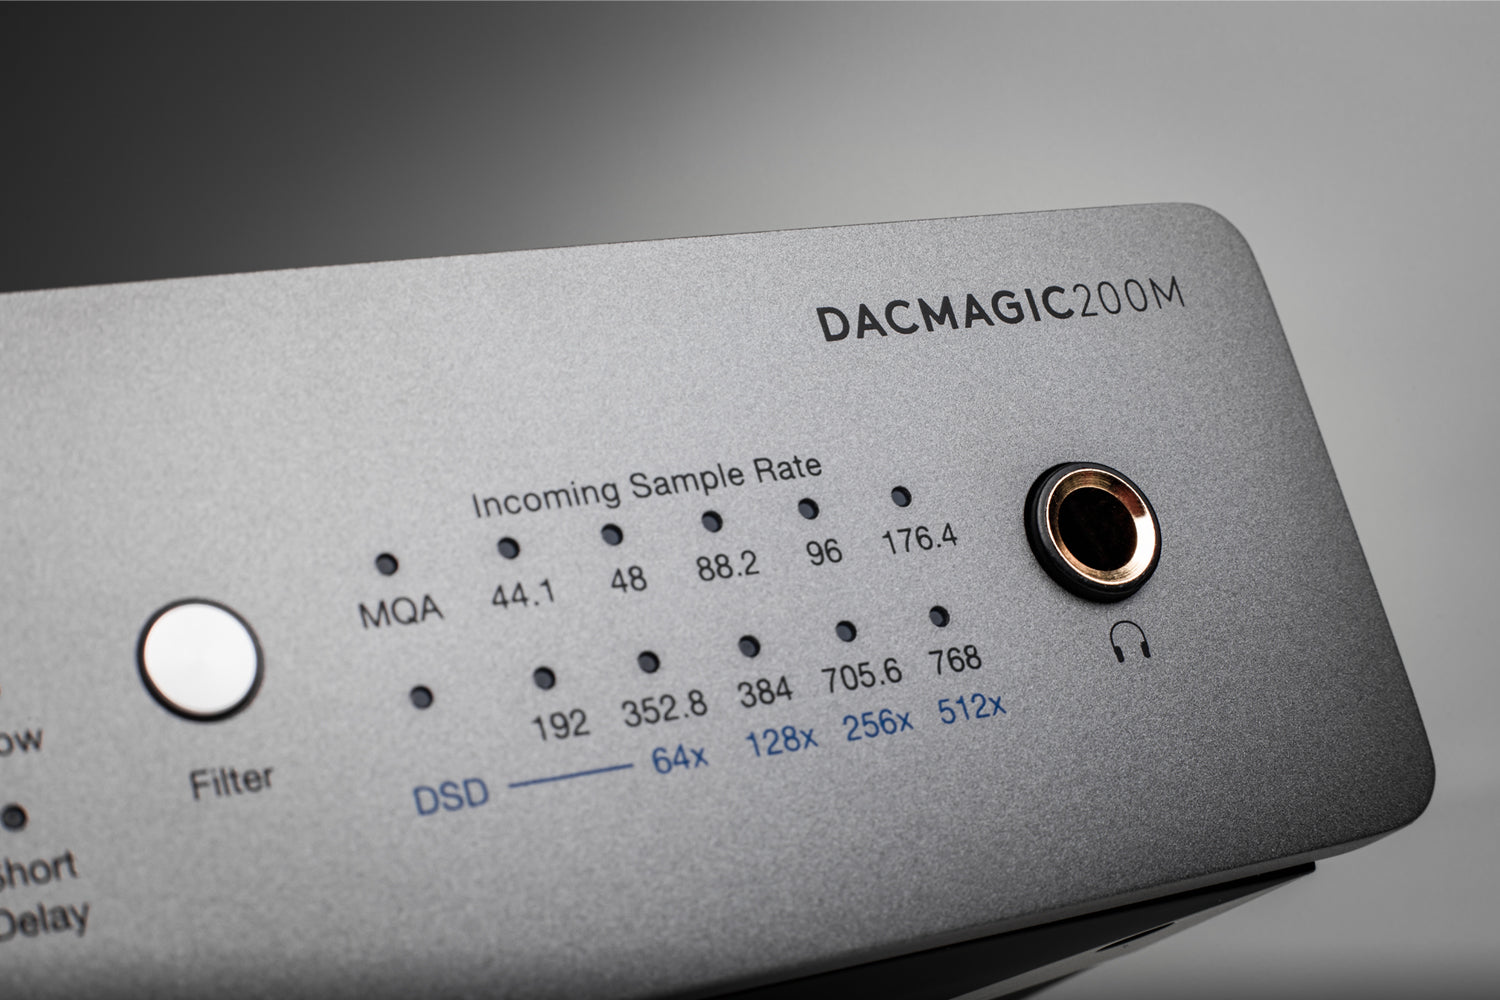 Conversor DAC Dacmagic 200m Cambridge Audio